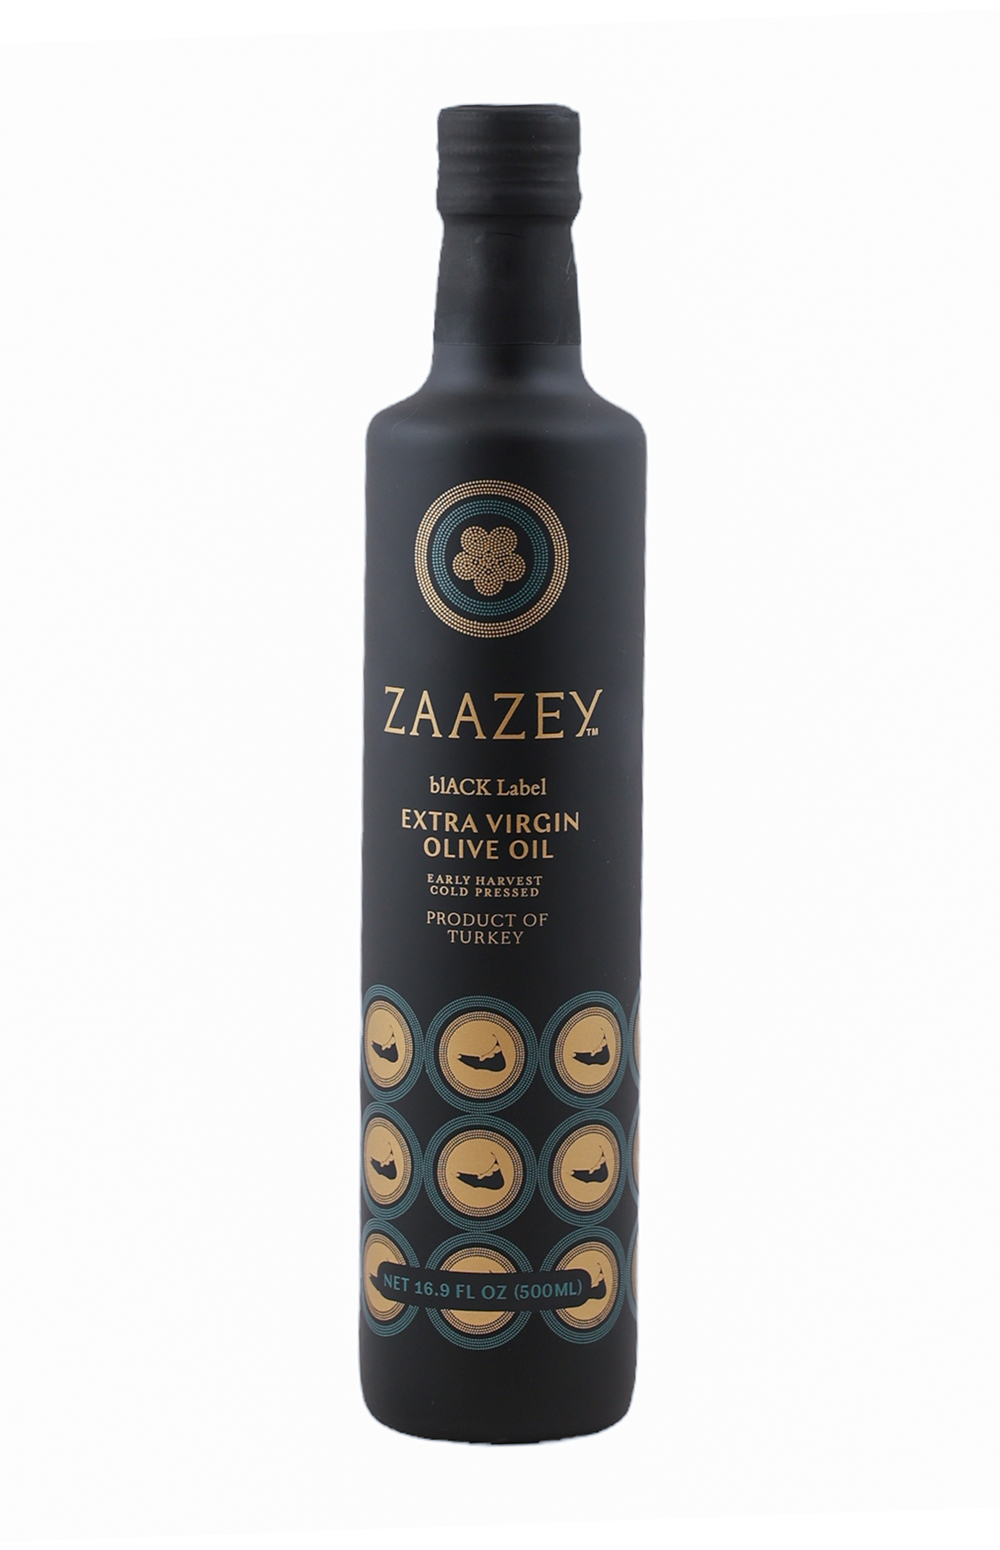 Zazzey Black Label